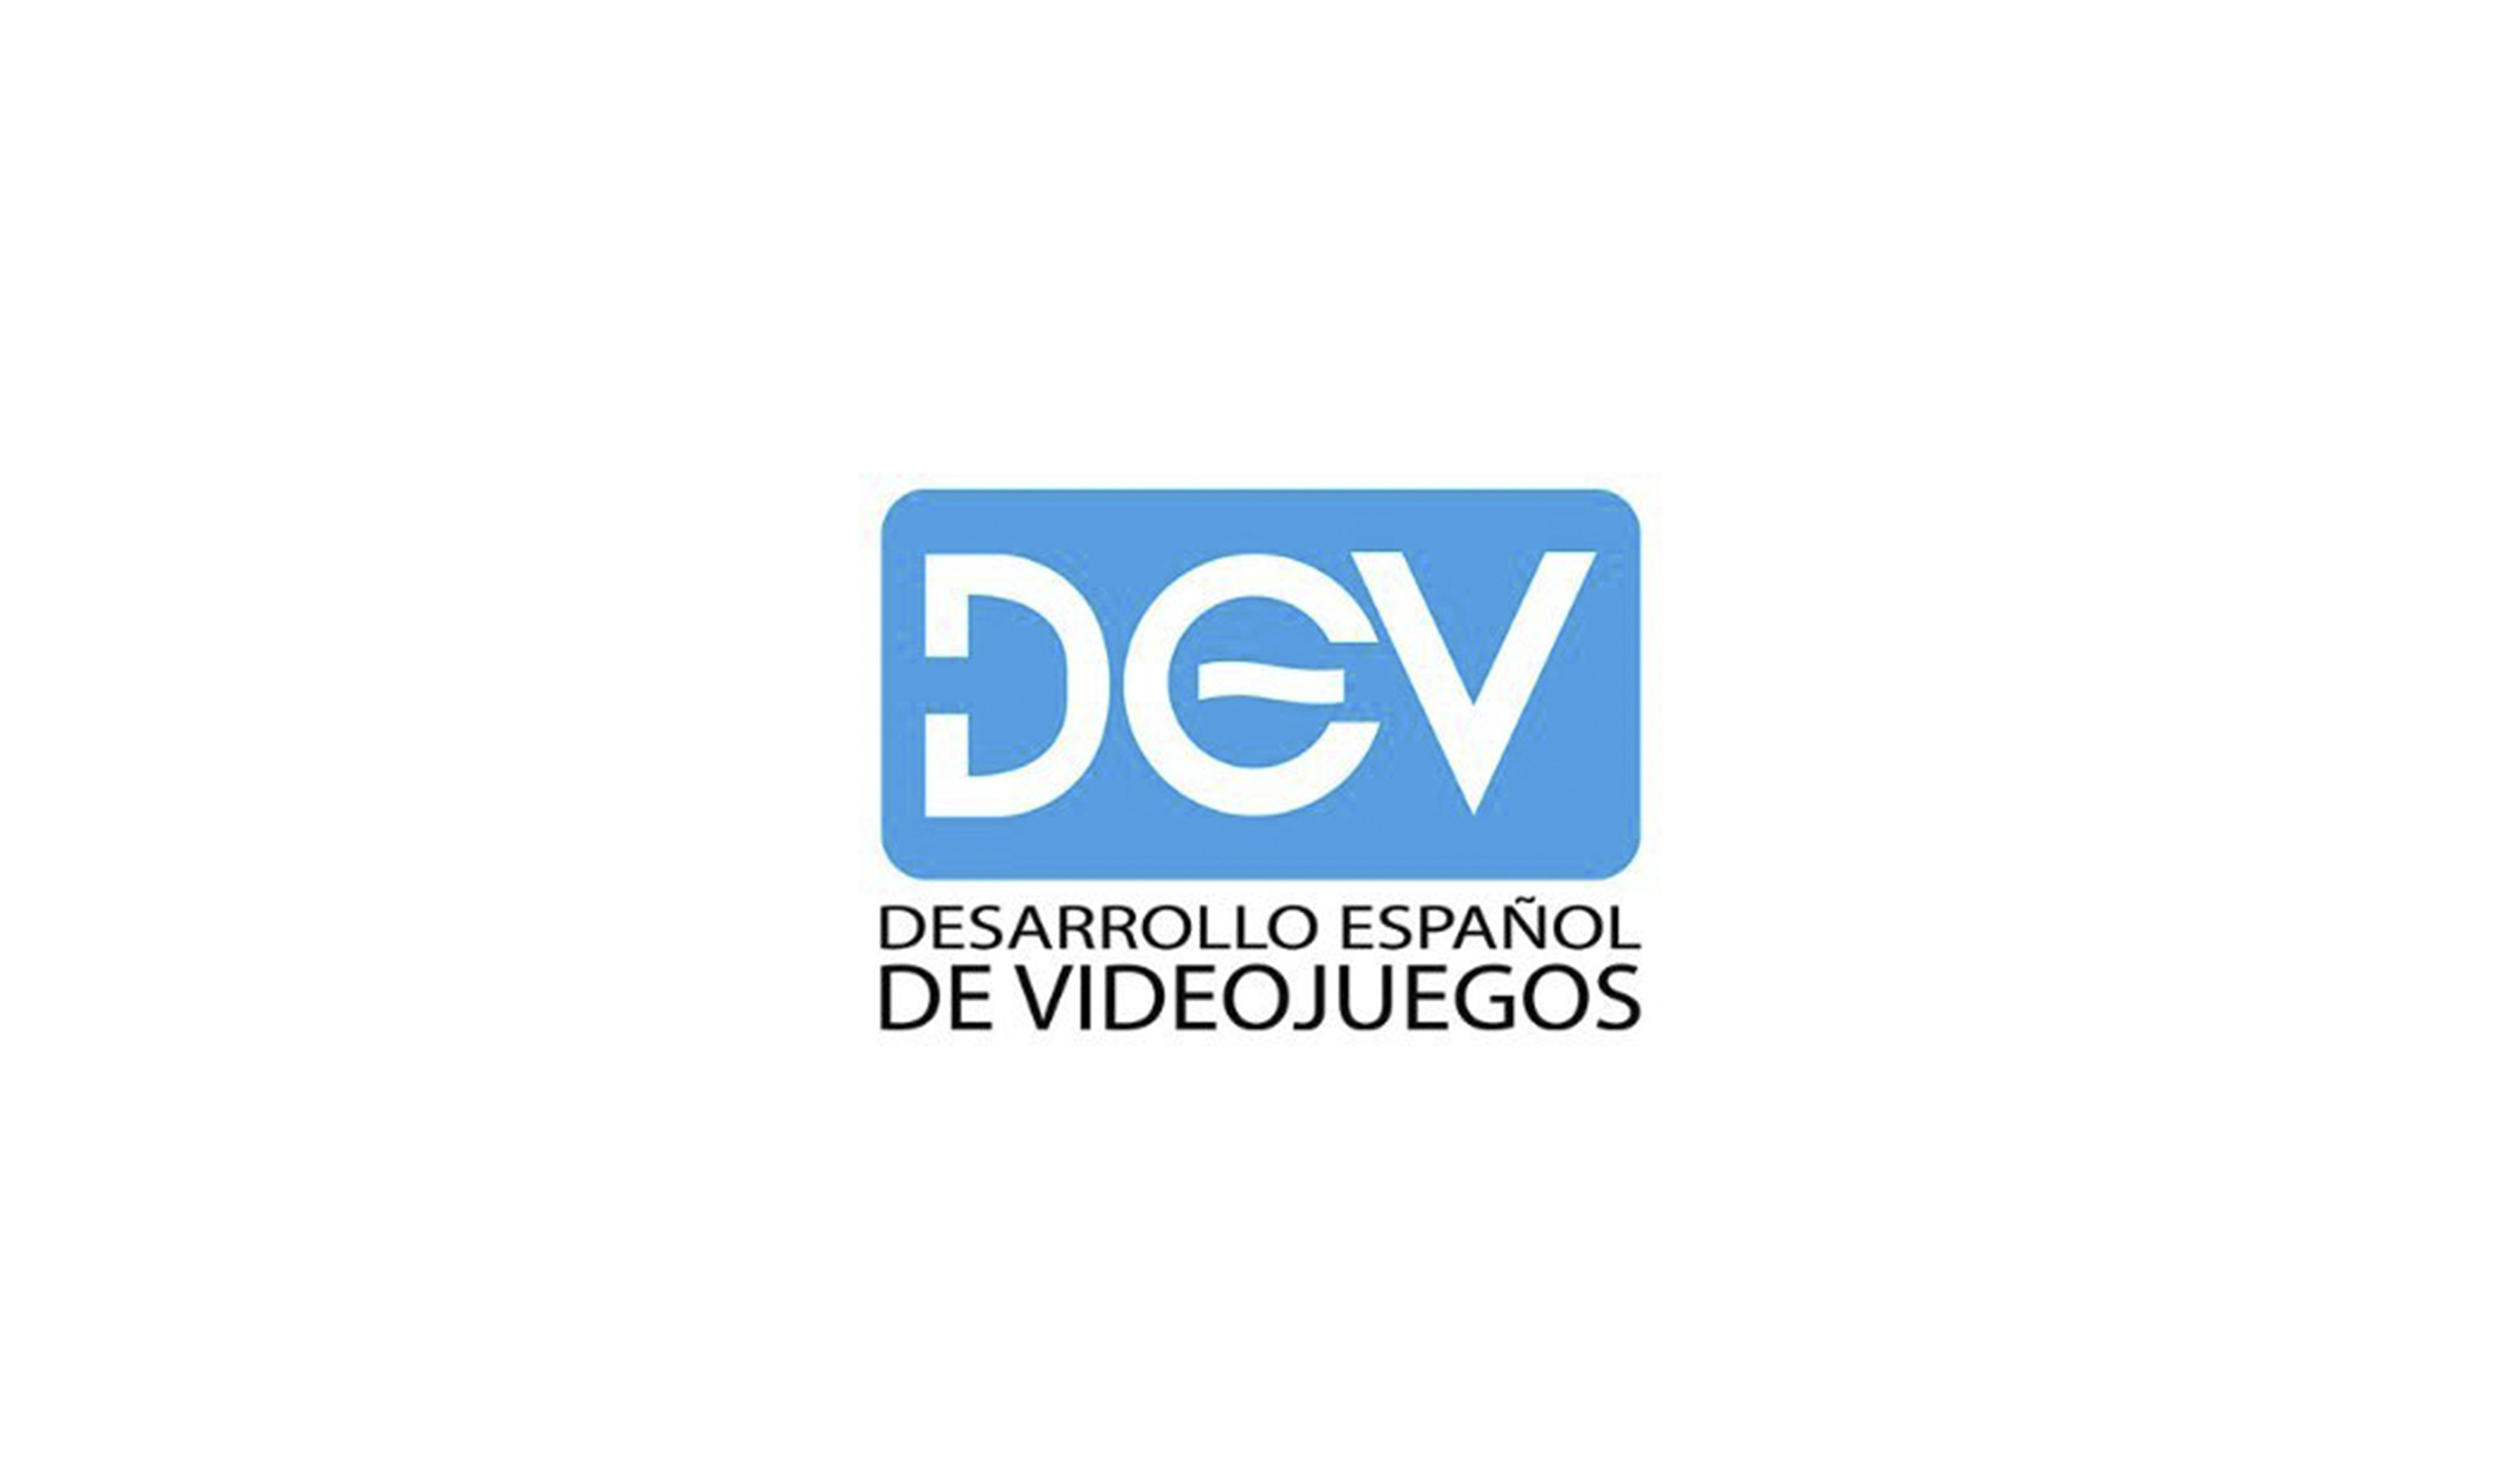 DESARROLLO ESPAÑOL DE VIDEOJUEGOS